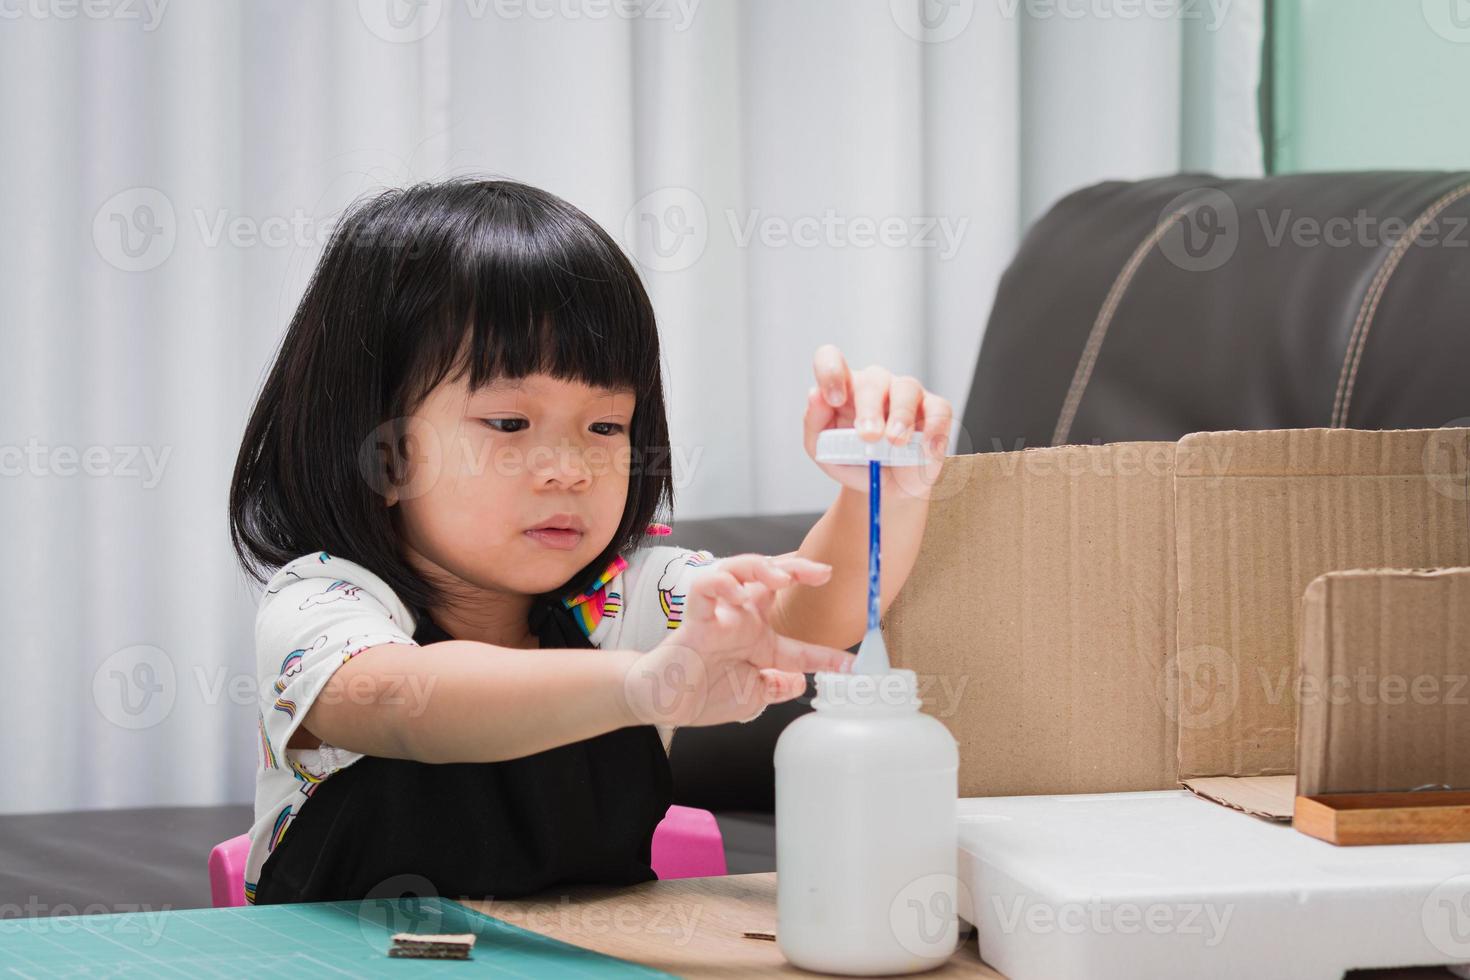 Una bambina di 4-5 anni sta costruendo una casa con scatole di cartone e polistirolo. il bambino usa la colla per applicare delicatamente piccoli pezzi da assemblare nella sua casa. il bambino si diverte molto ad imparare e farlo. foto